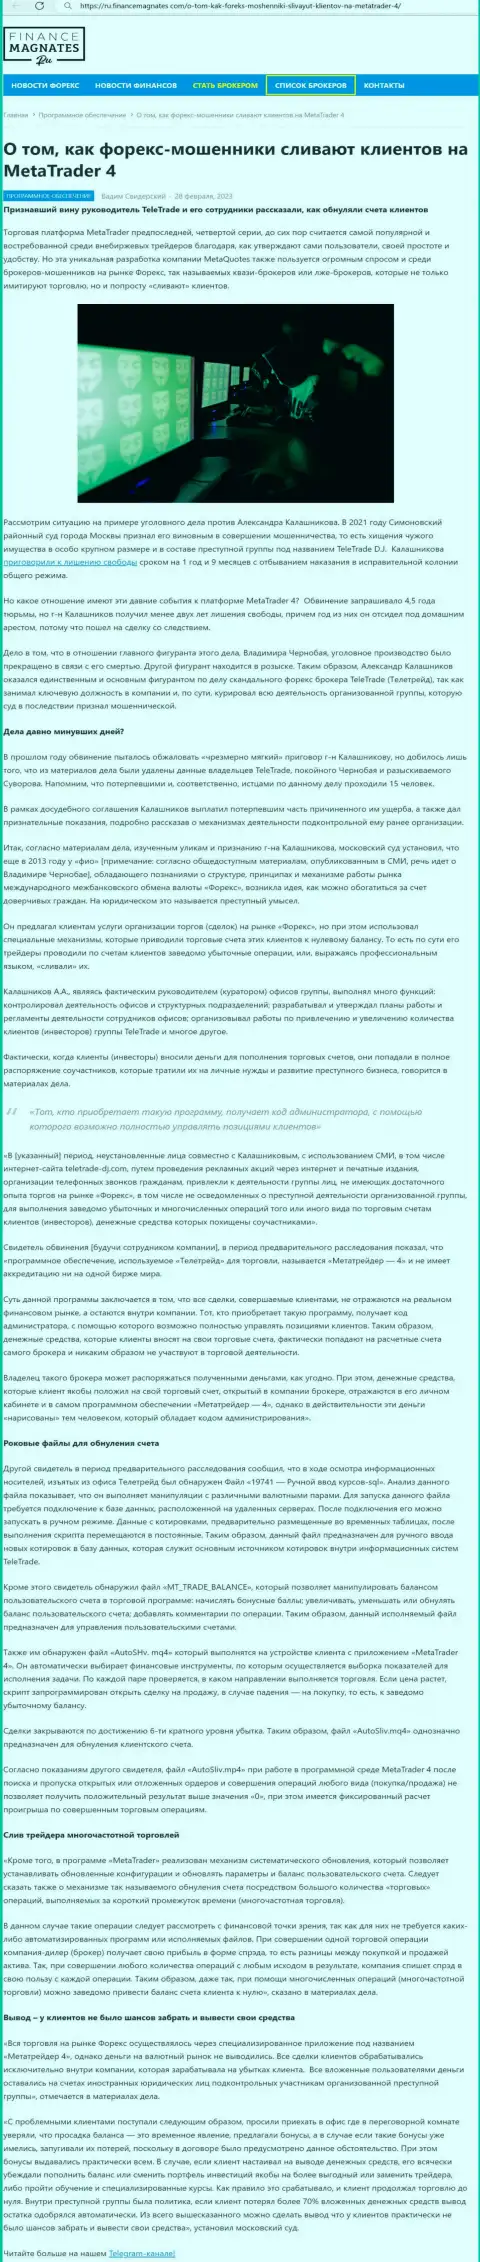 Обзор и отзывы об организации МТ4 - ЛОХОТРОНЩИКИ !